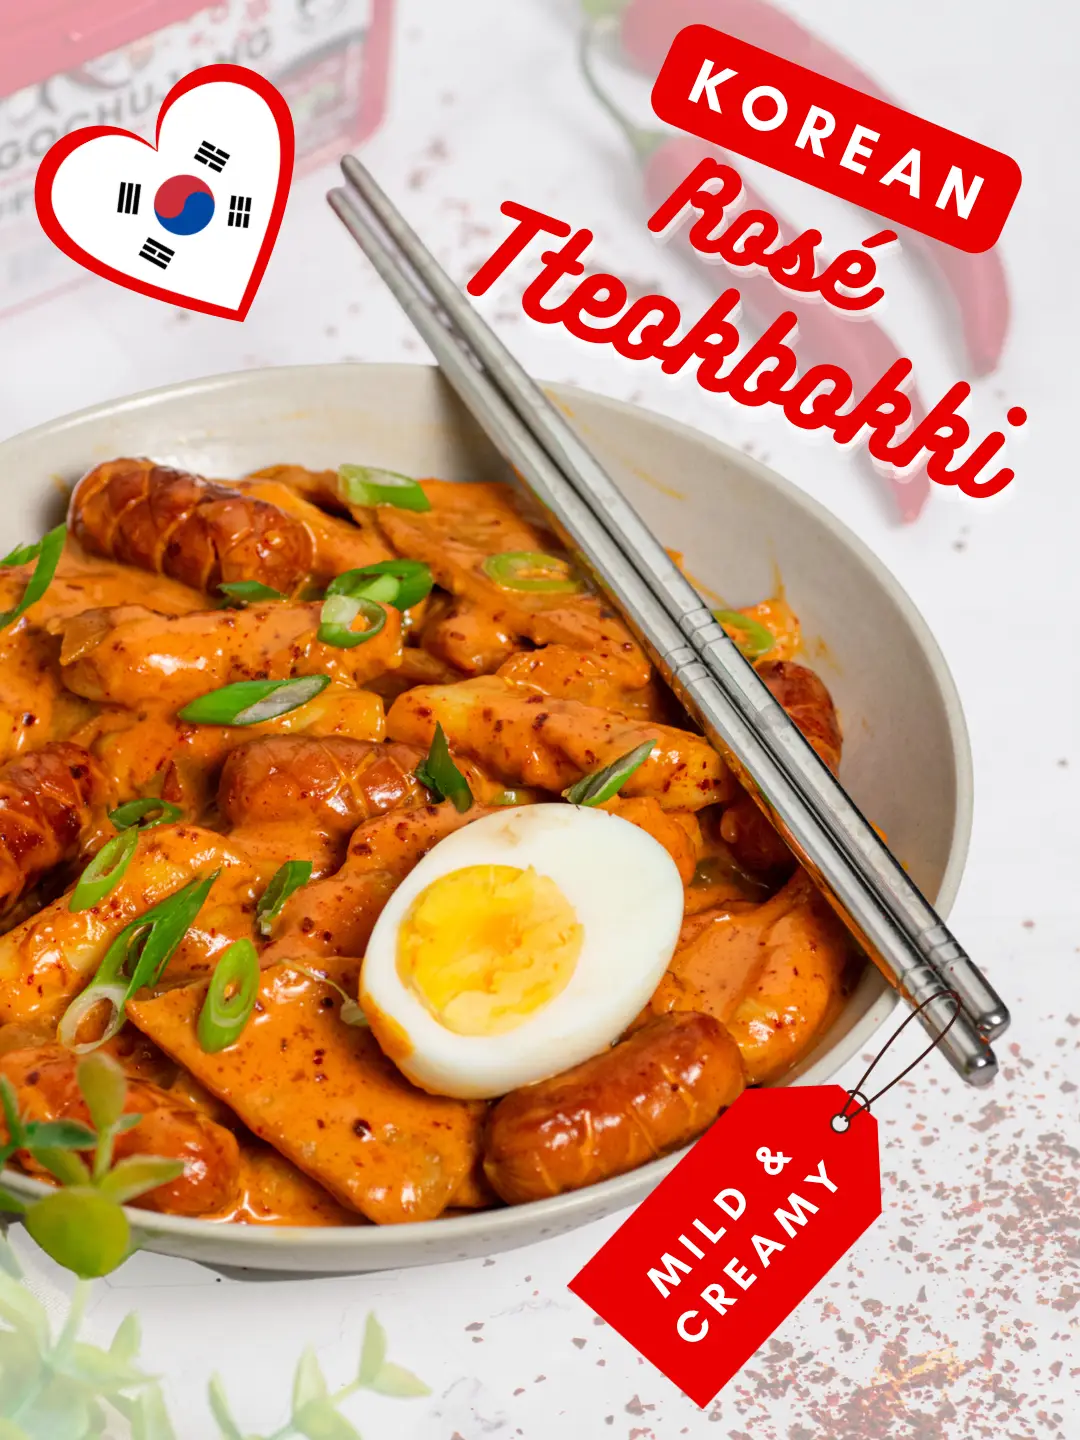 Rose Tteokbokki - A Milder Version of the Korean Rice Cake Dish